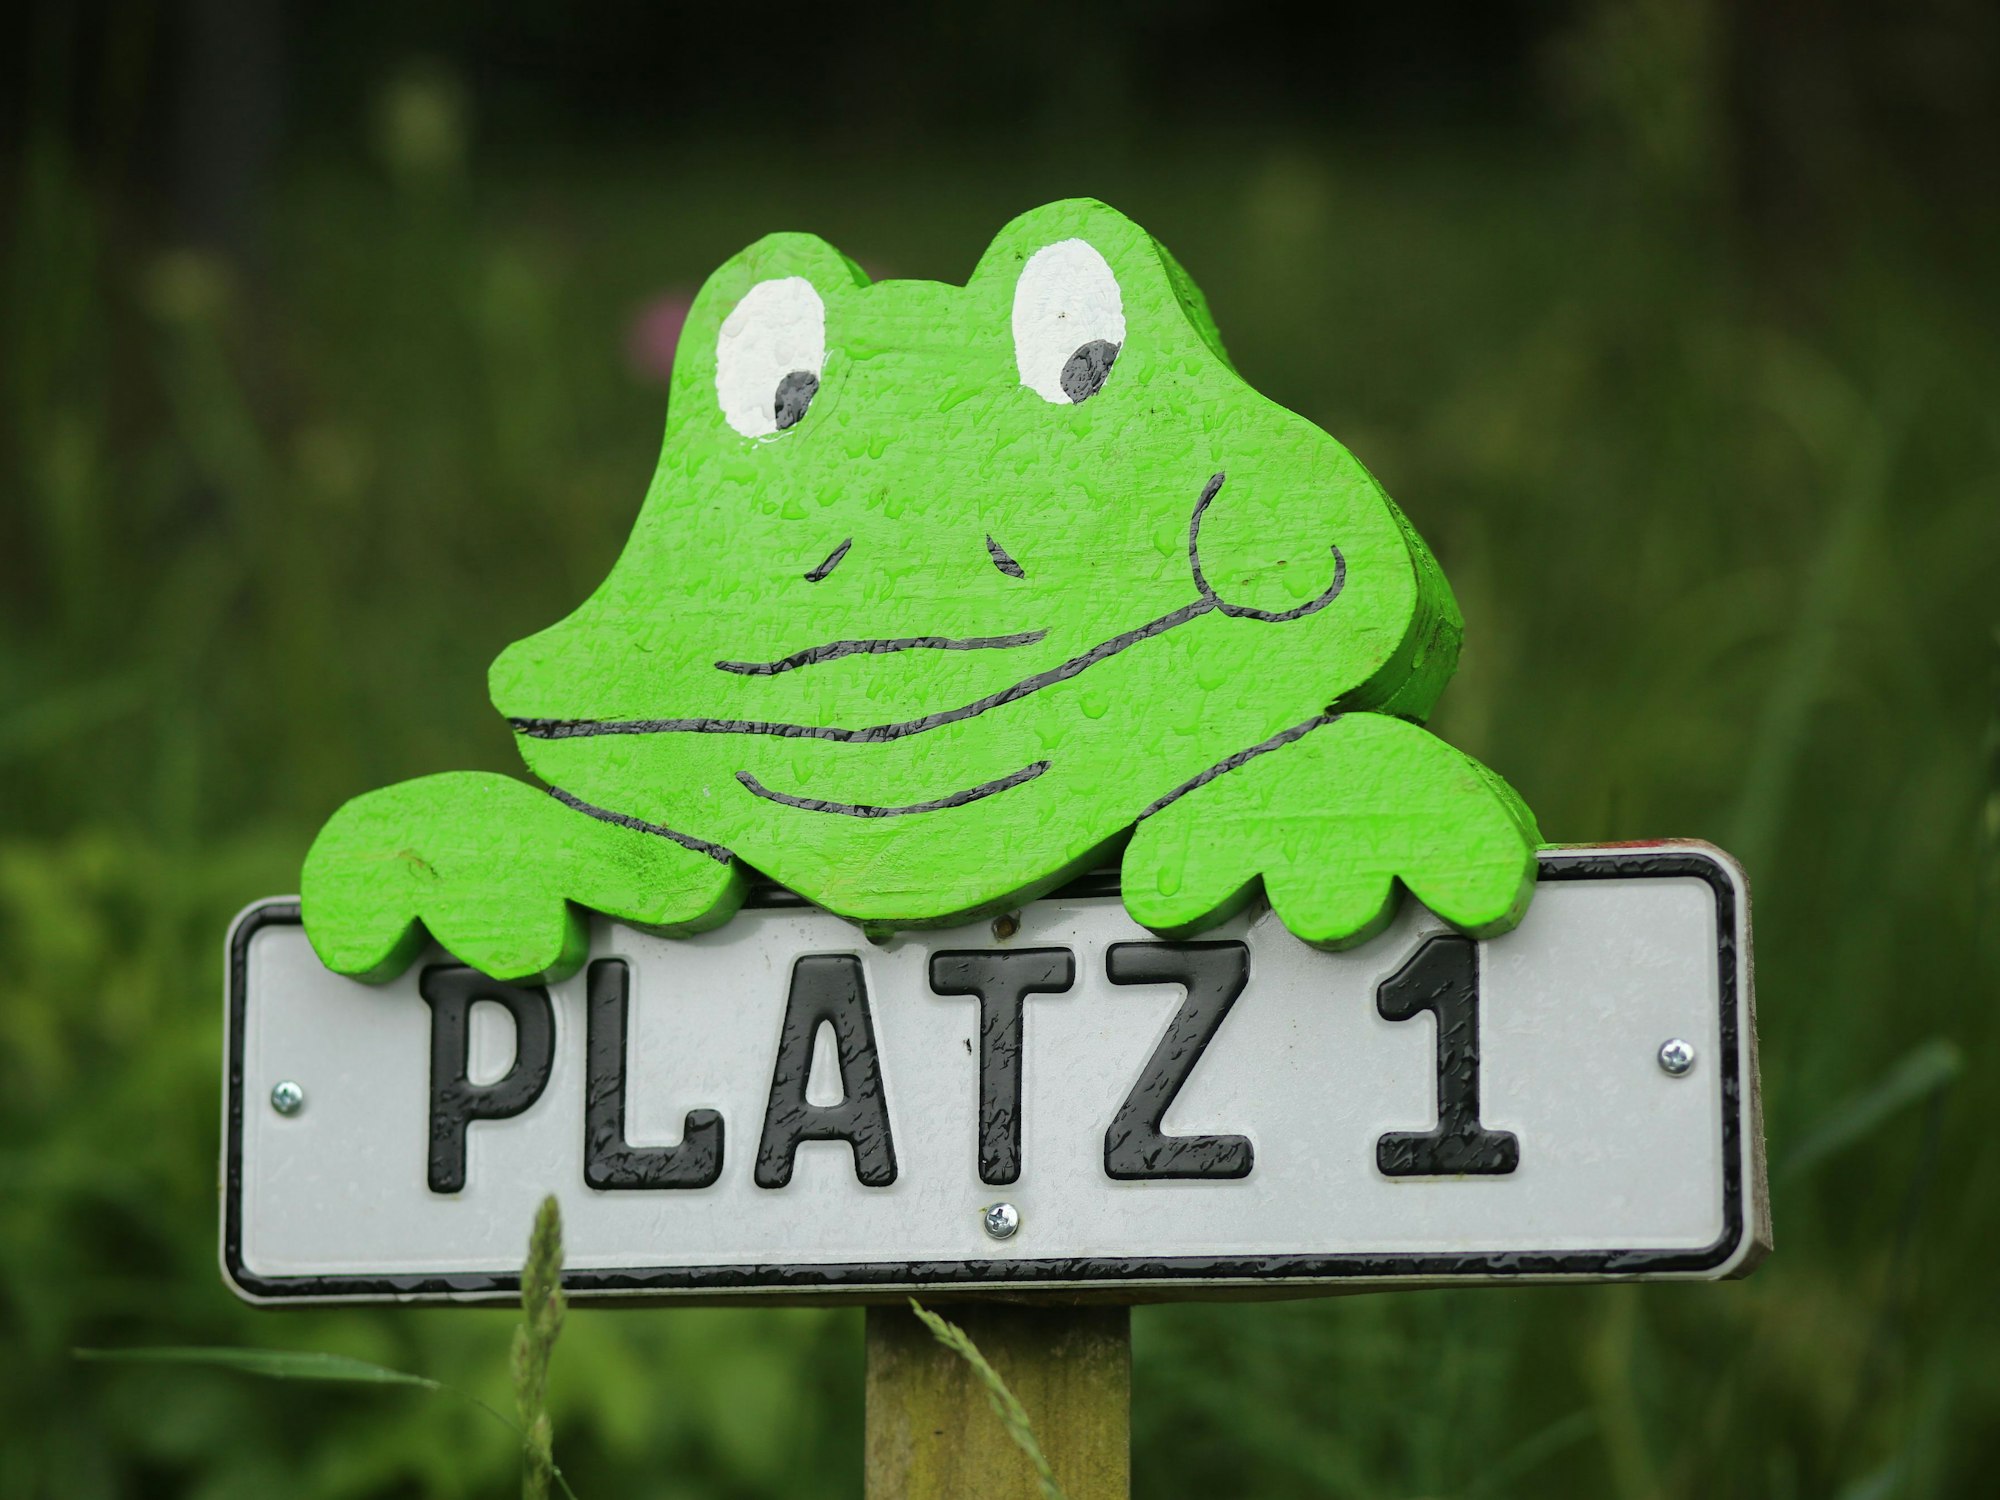 Ein Schild mit der Abbildung eines Frosches weist auf Platz 1 auf einem Campingplatz hin.